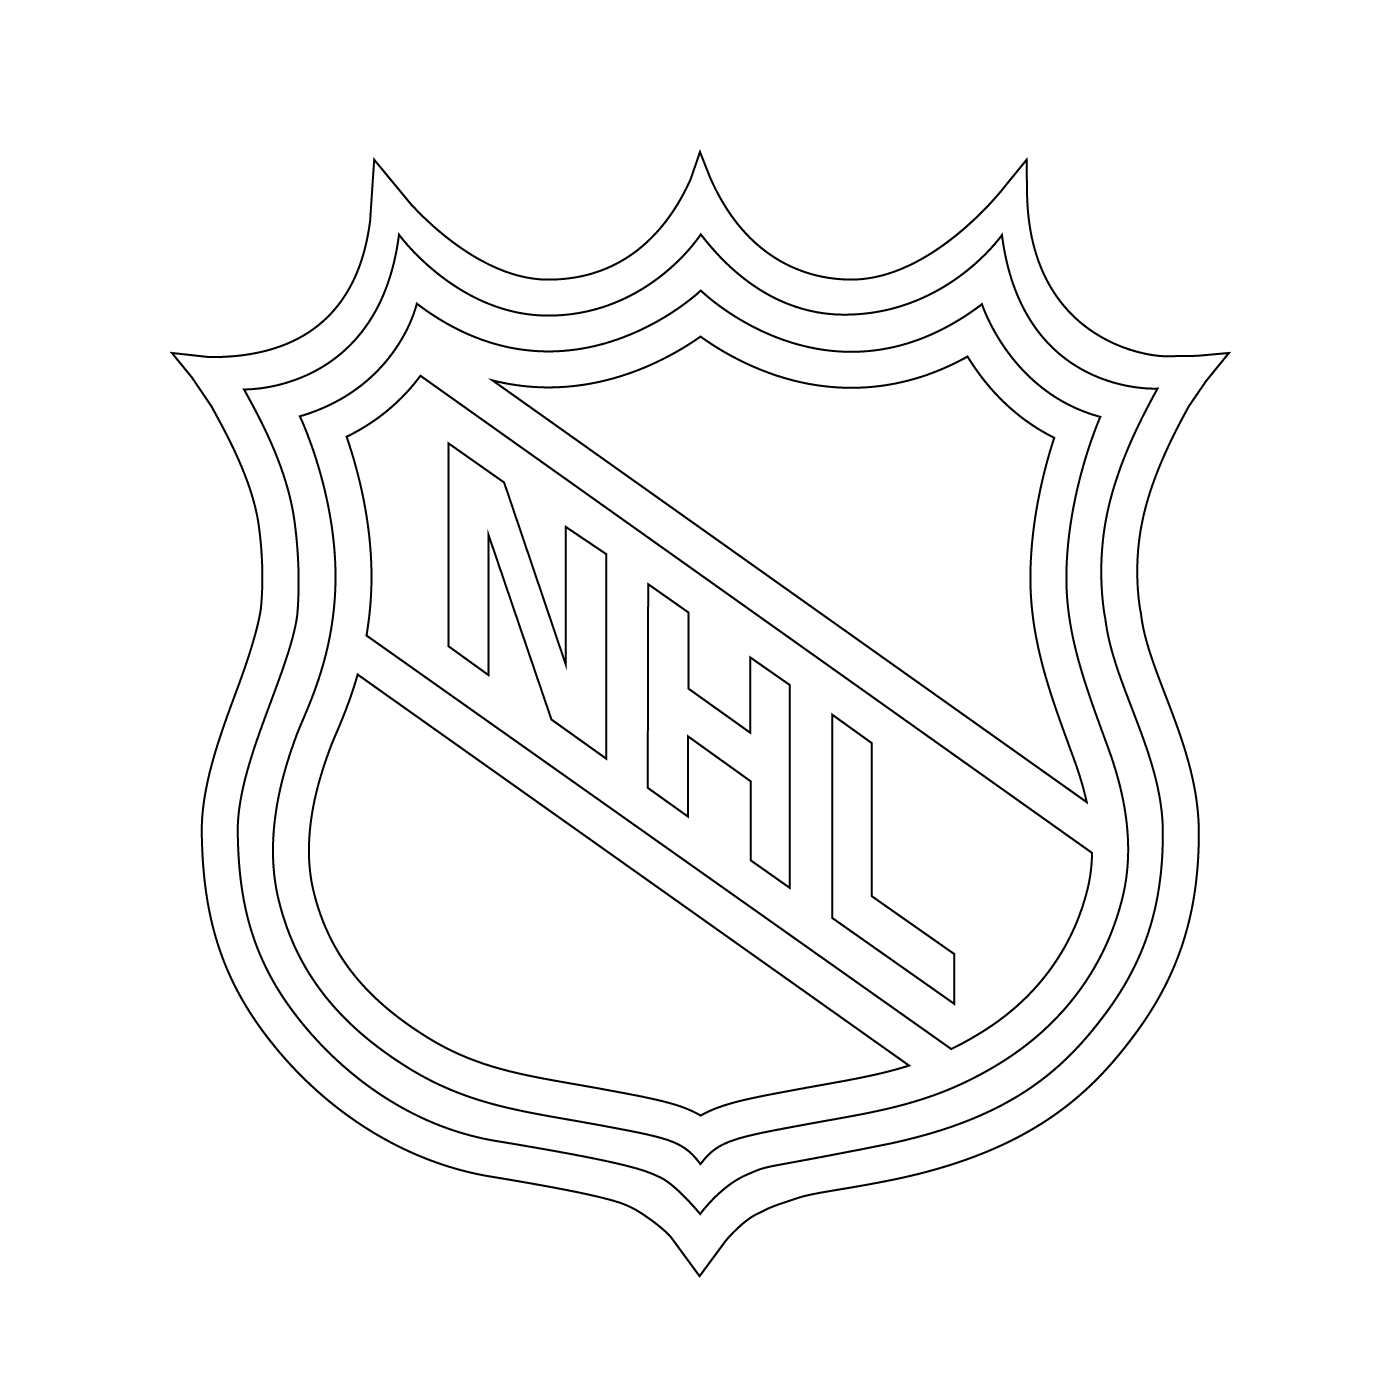  Логотип НХЛ (Национальная хоккейная лига) 